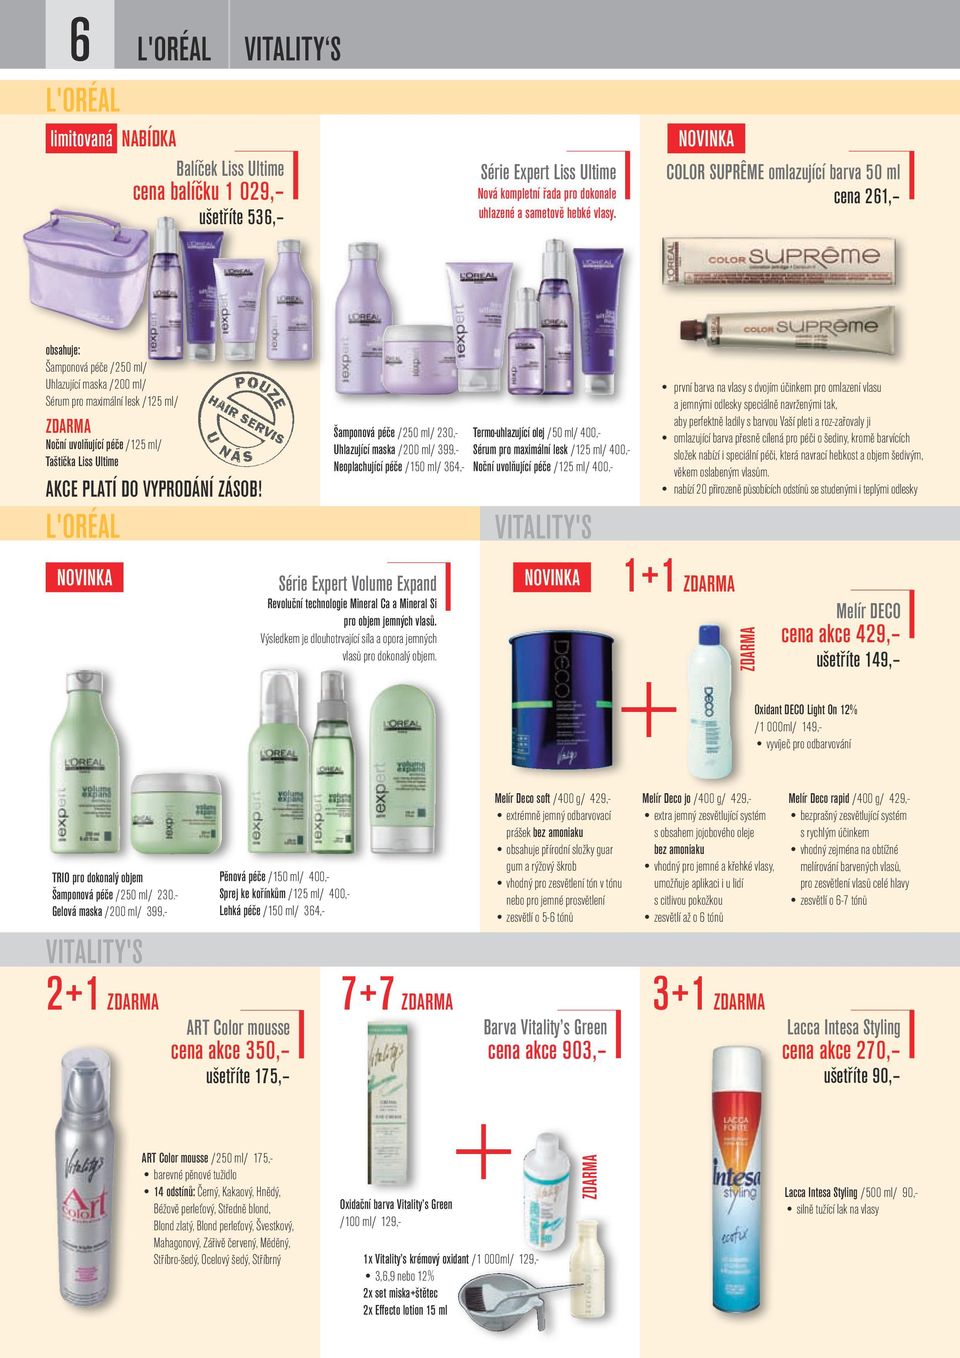 Ultime Akce platí do vyprodání zásob! L'Oréal NOVINKA TRIO pro dokonalý objem Šamponová péče /250 ml/ 230.